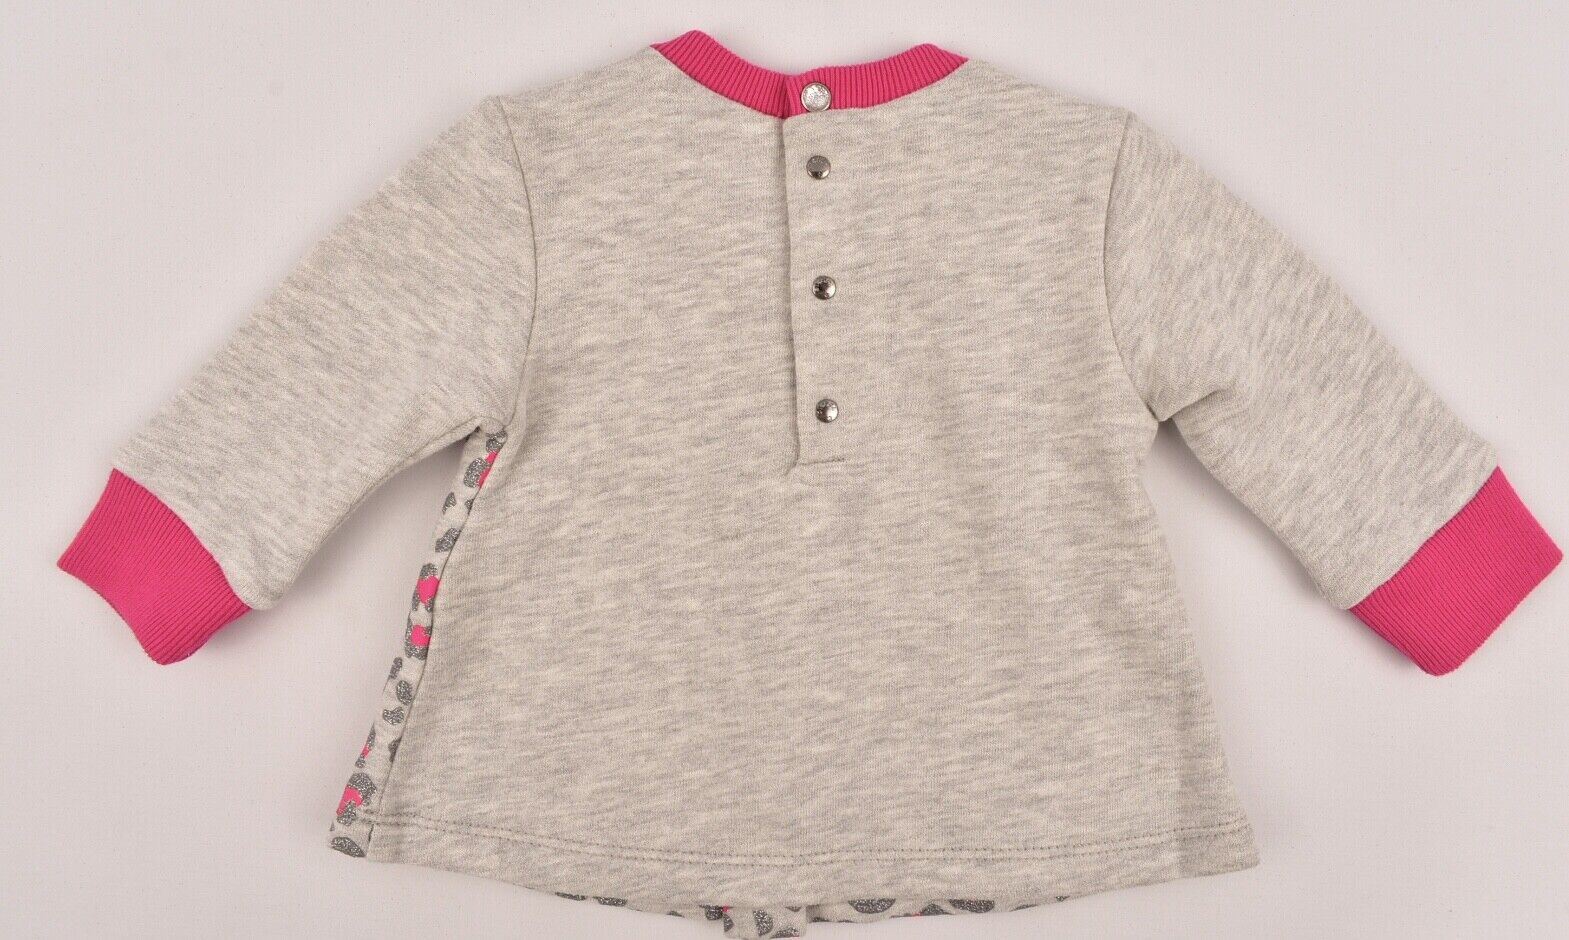 DIESEL Baby Girls' Sweatshirt Top, Jumper, Pink/Grey, size 6 months